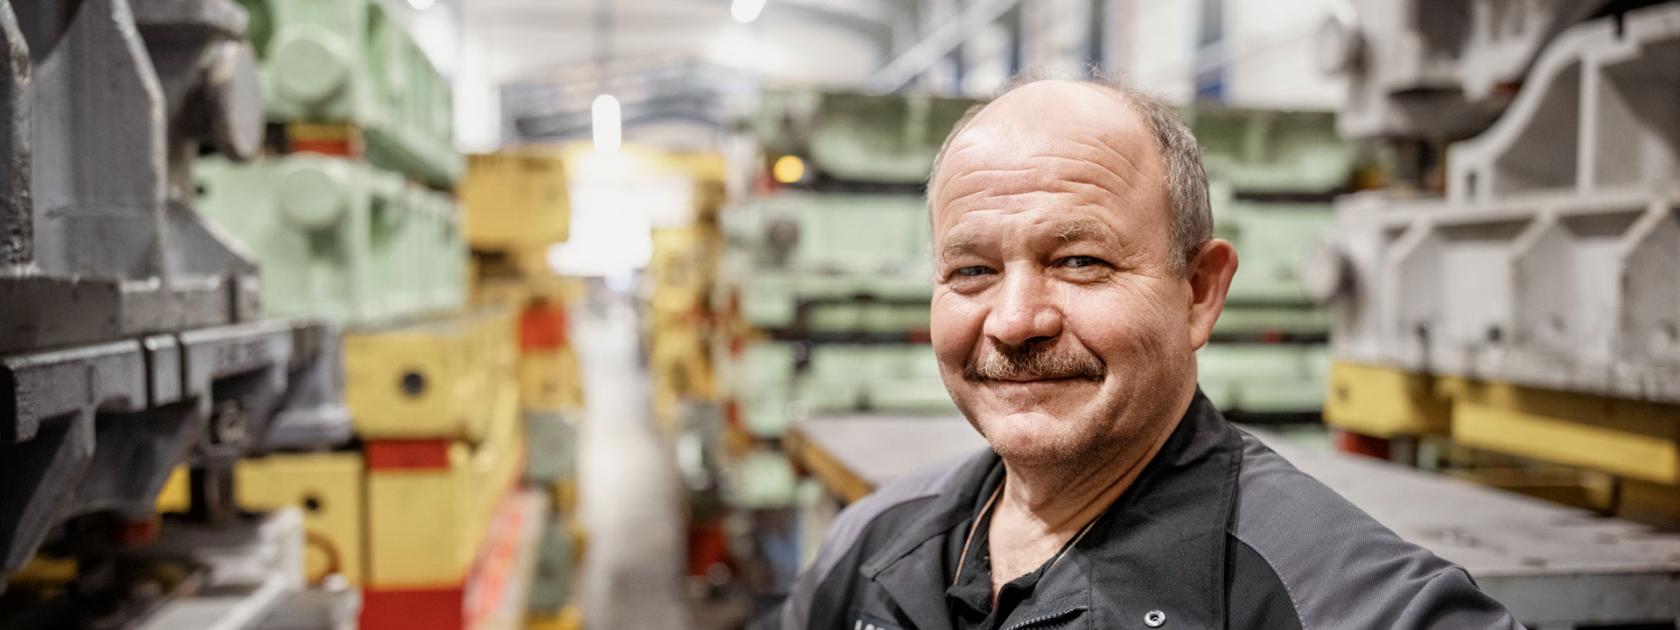 Peter Brill, Instandhaltung, HÖRMANN Automotive St. Wendel GmbH